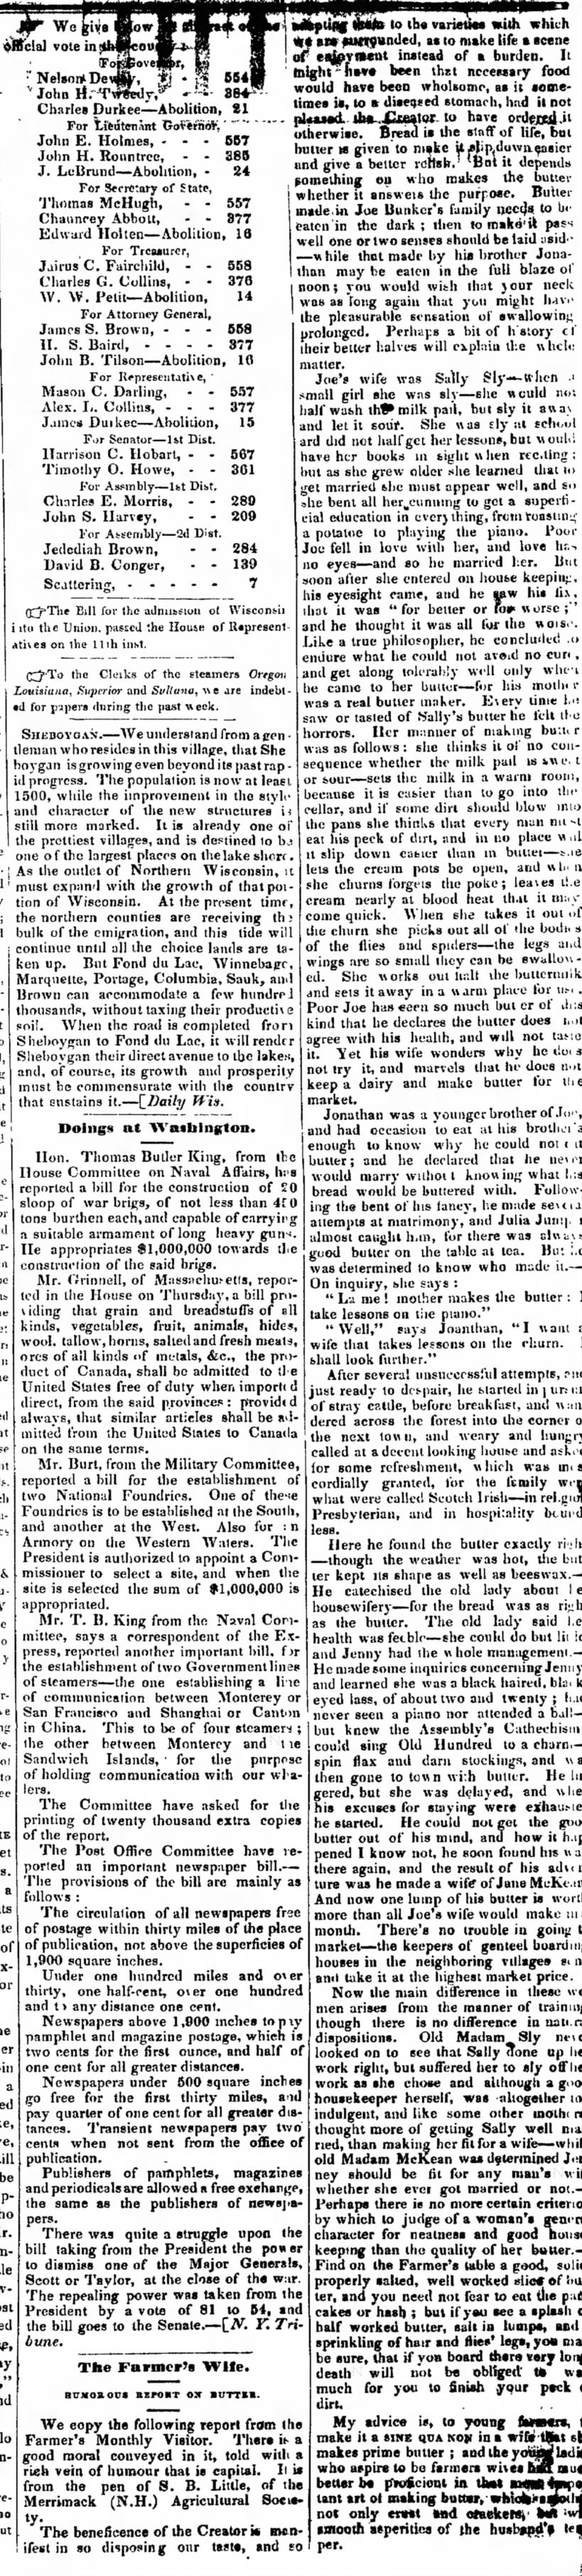 The Sheboygan Mercury
Sheboygan, Wisconsin
20 May 1848, Sat 
p 2  columns 6 and 7